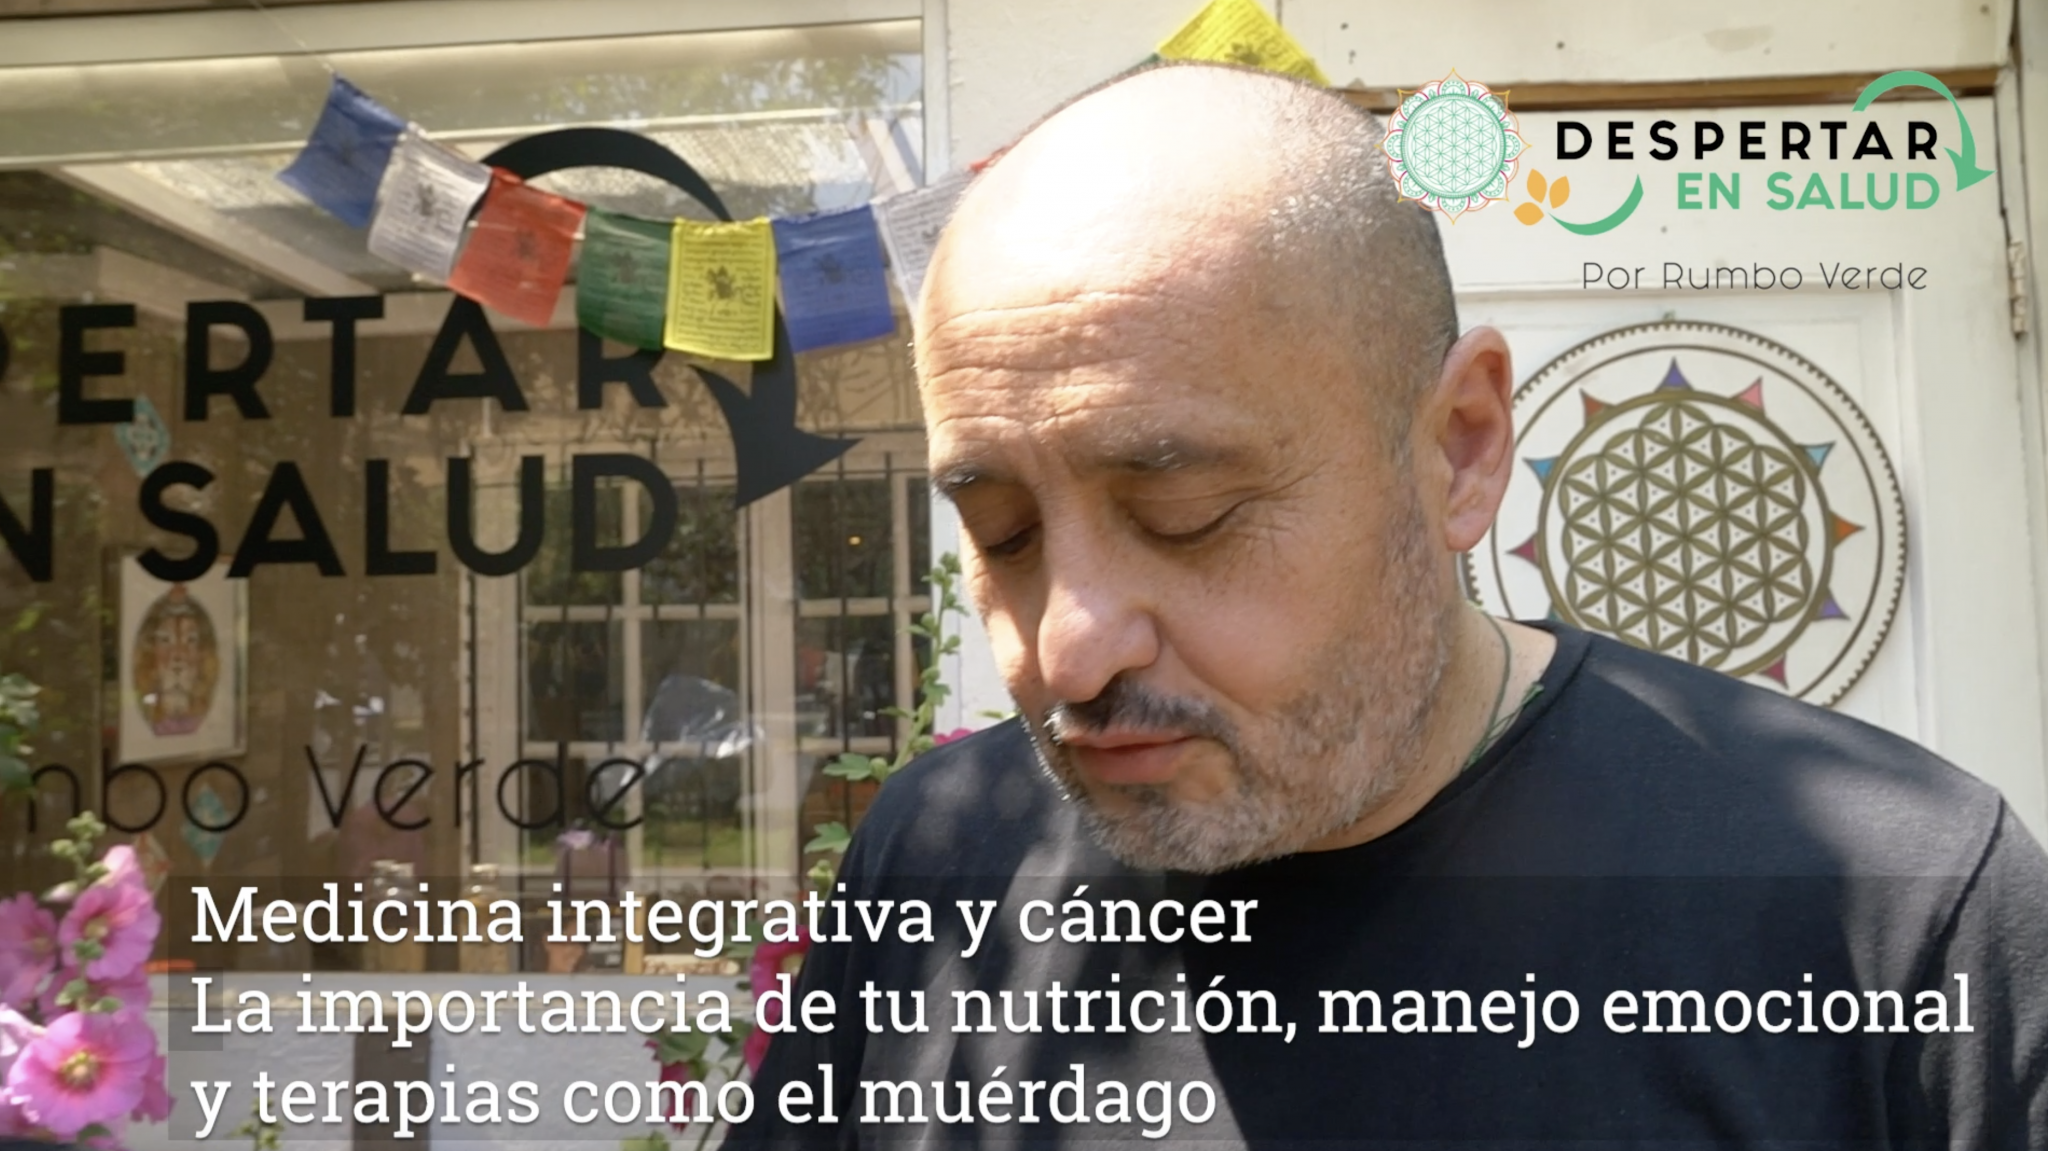 Carlos logró vencer un agresivo cáncer sumando medicina integrativa y un profundo cambio de hábitos